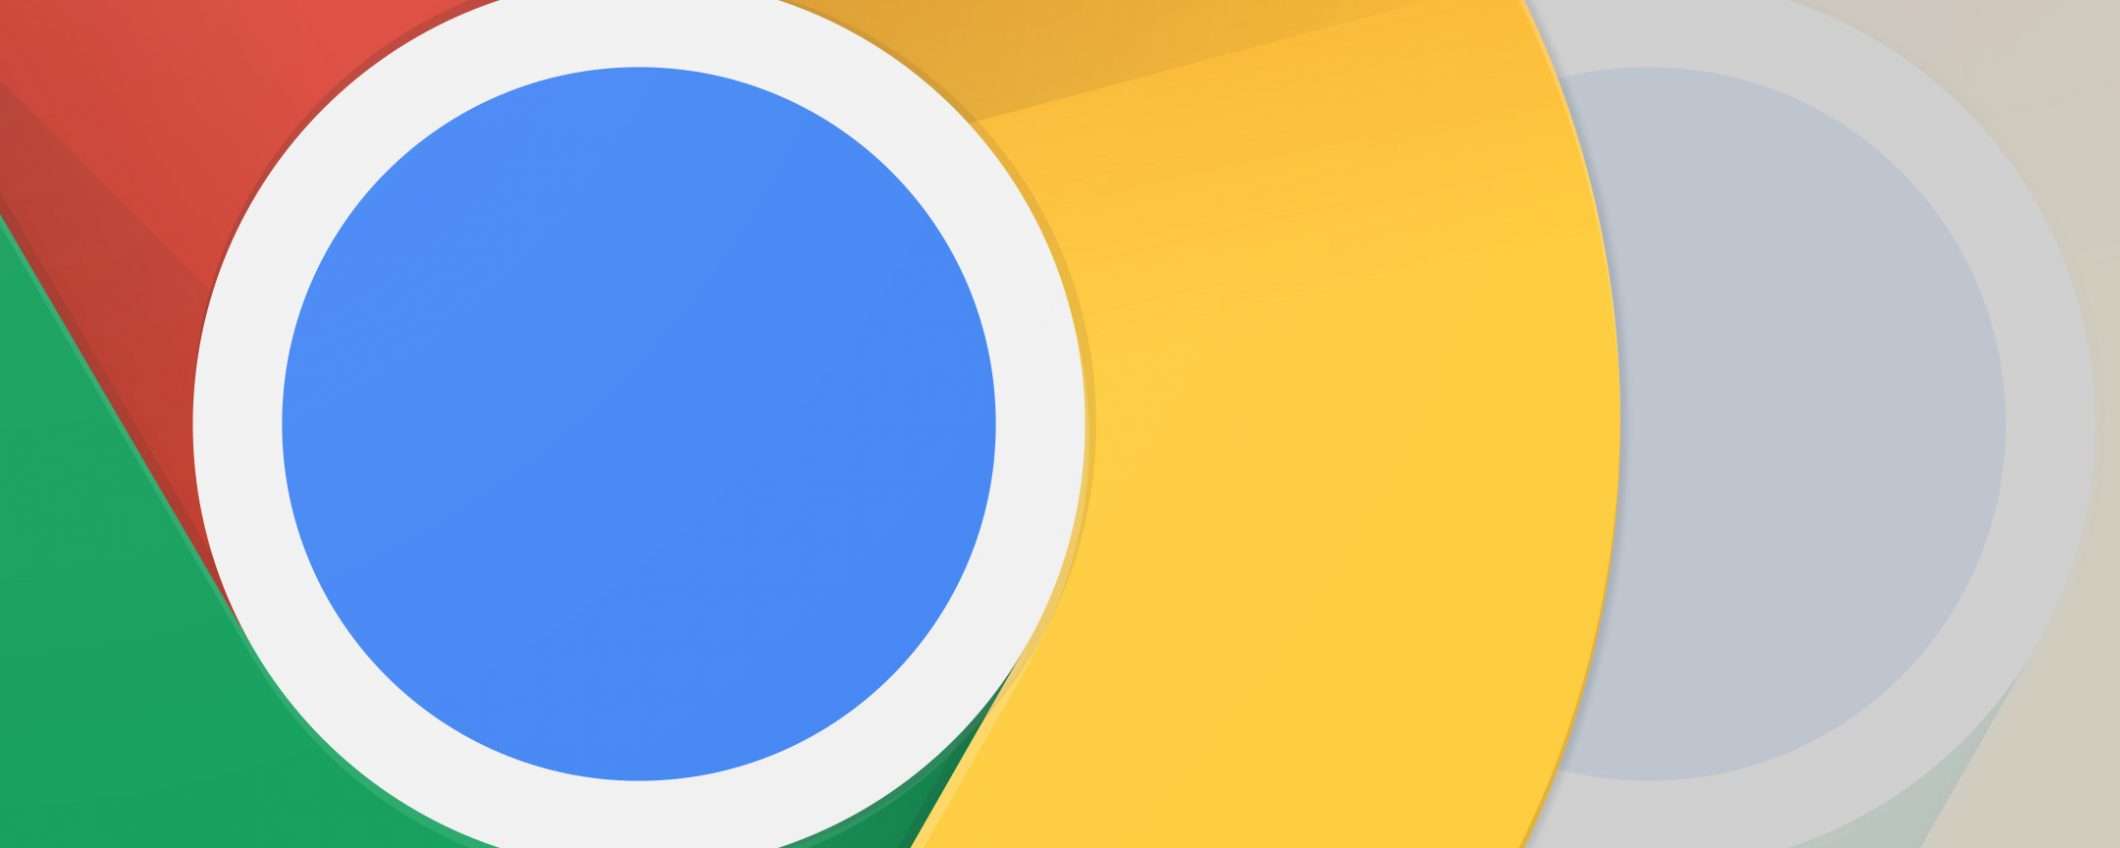 Google: no alle estensioni di Chrome su Edge